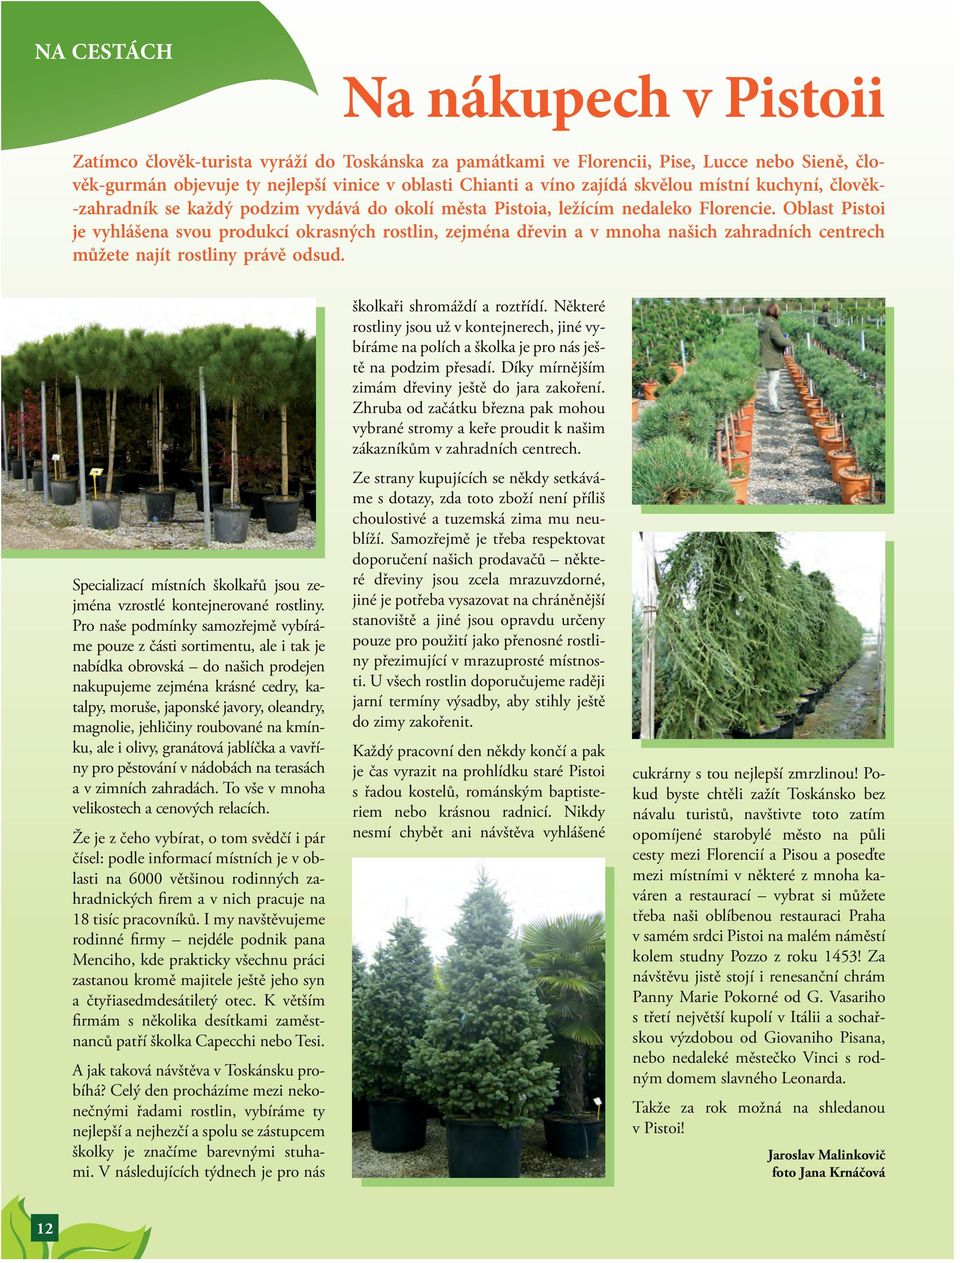 Oblast Pistoi je vyhlášena svou produkcí okrasných rostlin, zejména dřevin a v mnoha našich zahradních centrech můžete najít rostliny právě odsud.